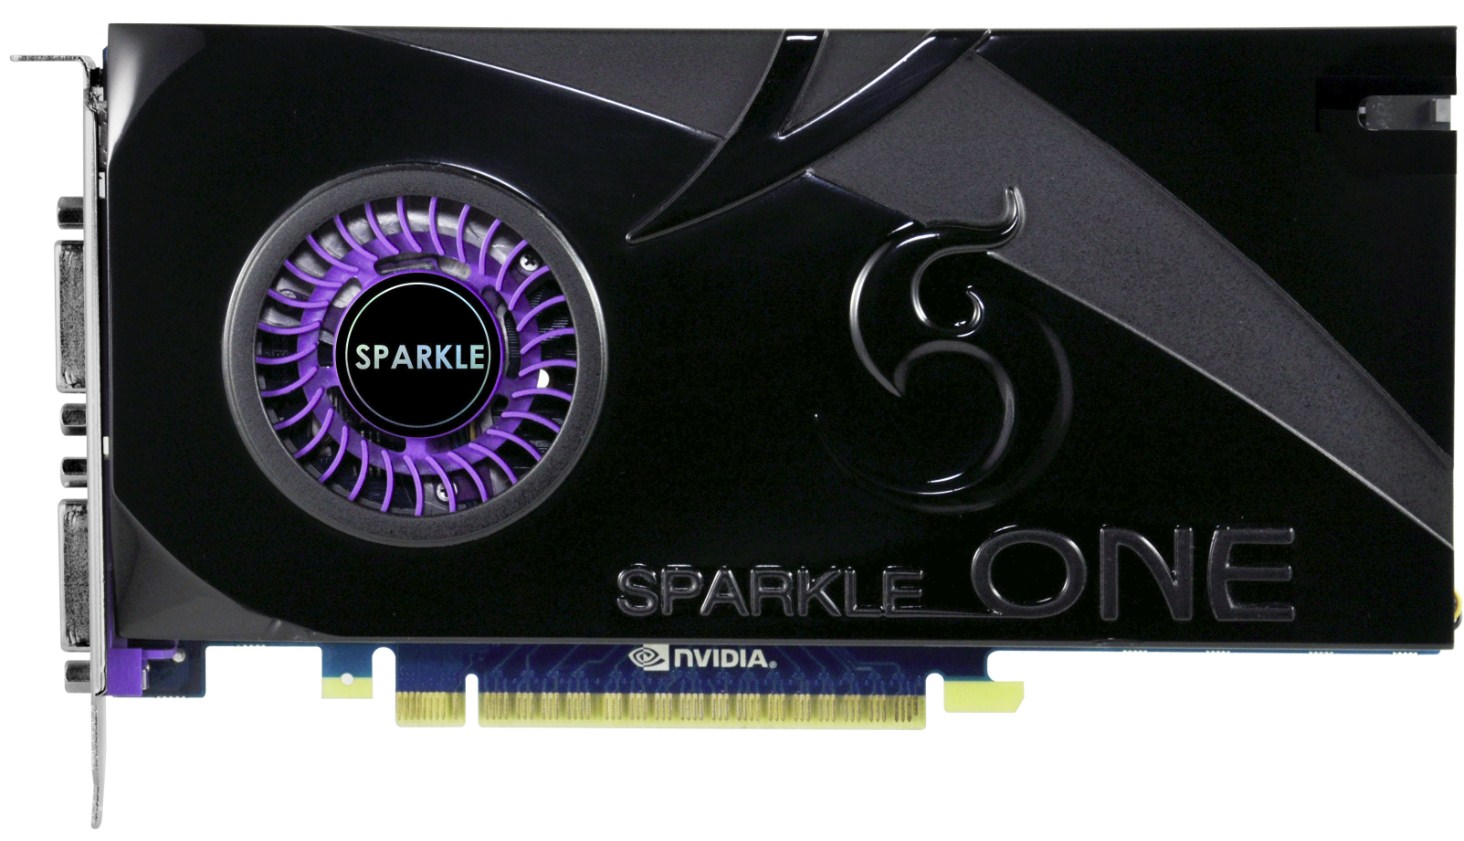 Immagine pubblicata in relazione al seguente contenuto: Sparkle annuncia una GeForce GTS 450 con cooler single-slot | Nome immagine: news14104_2.jpg